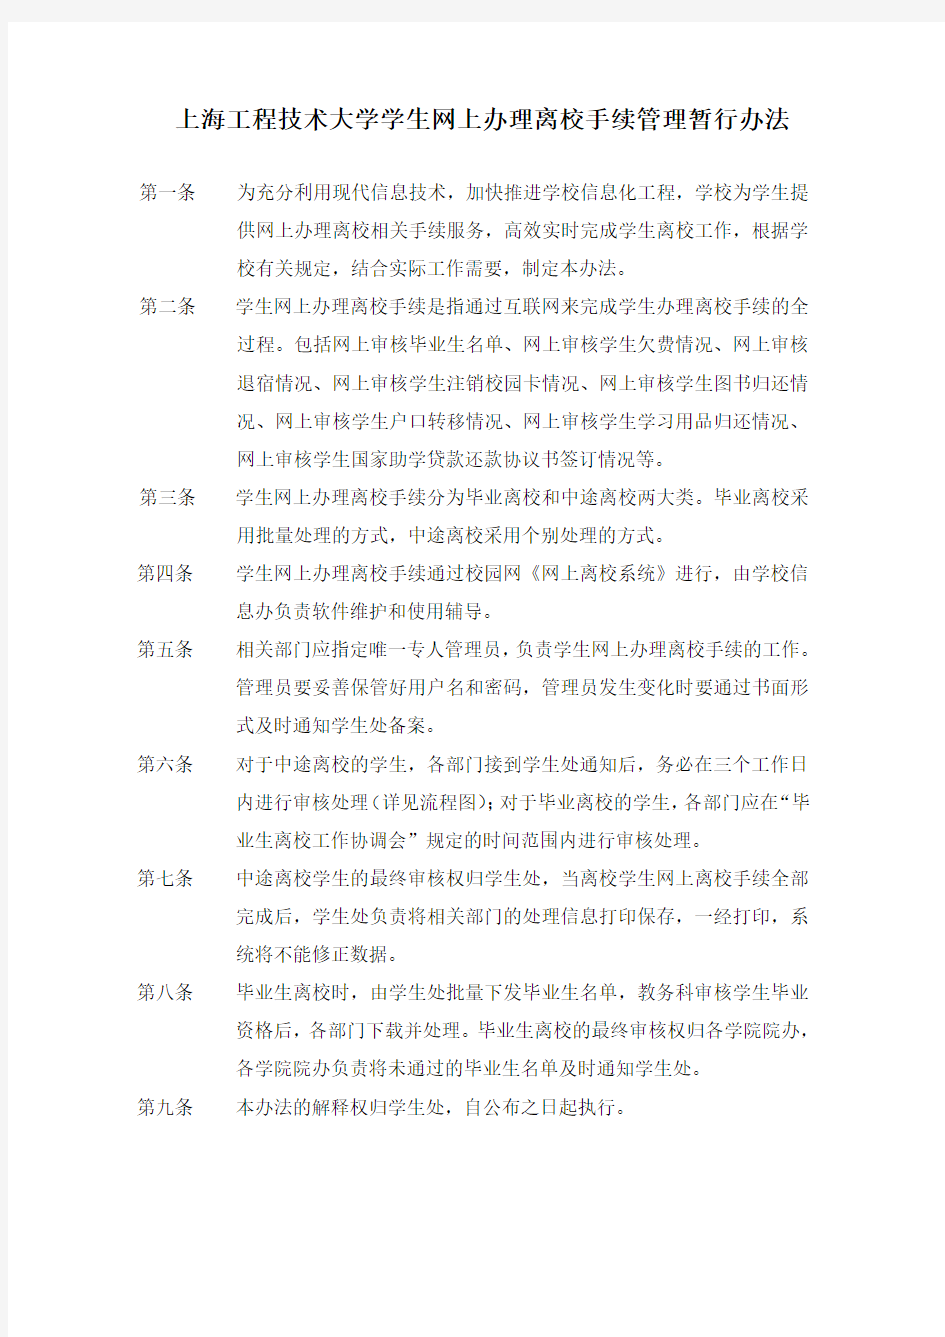 上海工程技术大学学生网上办理离校手续管理暂行办法